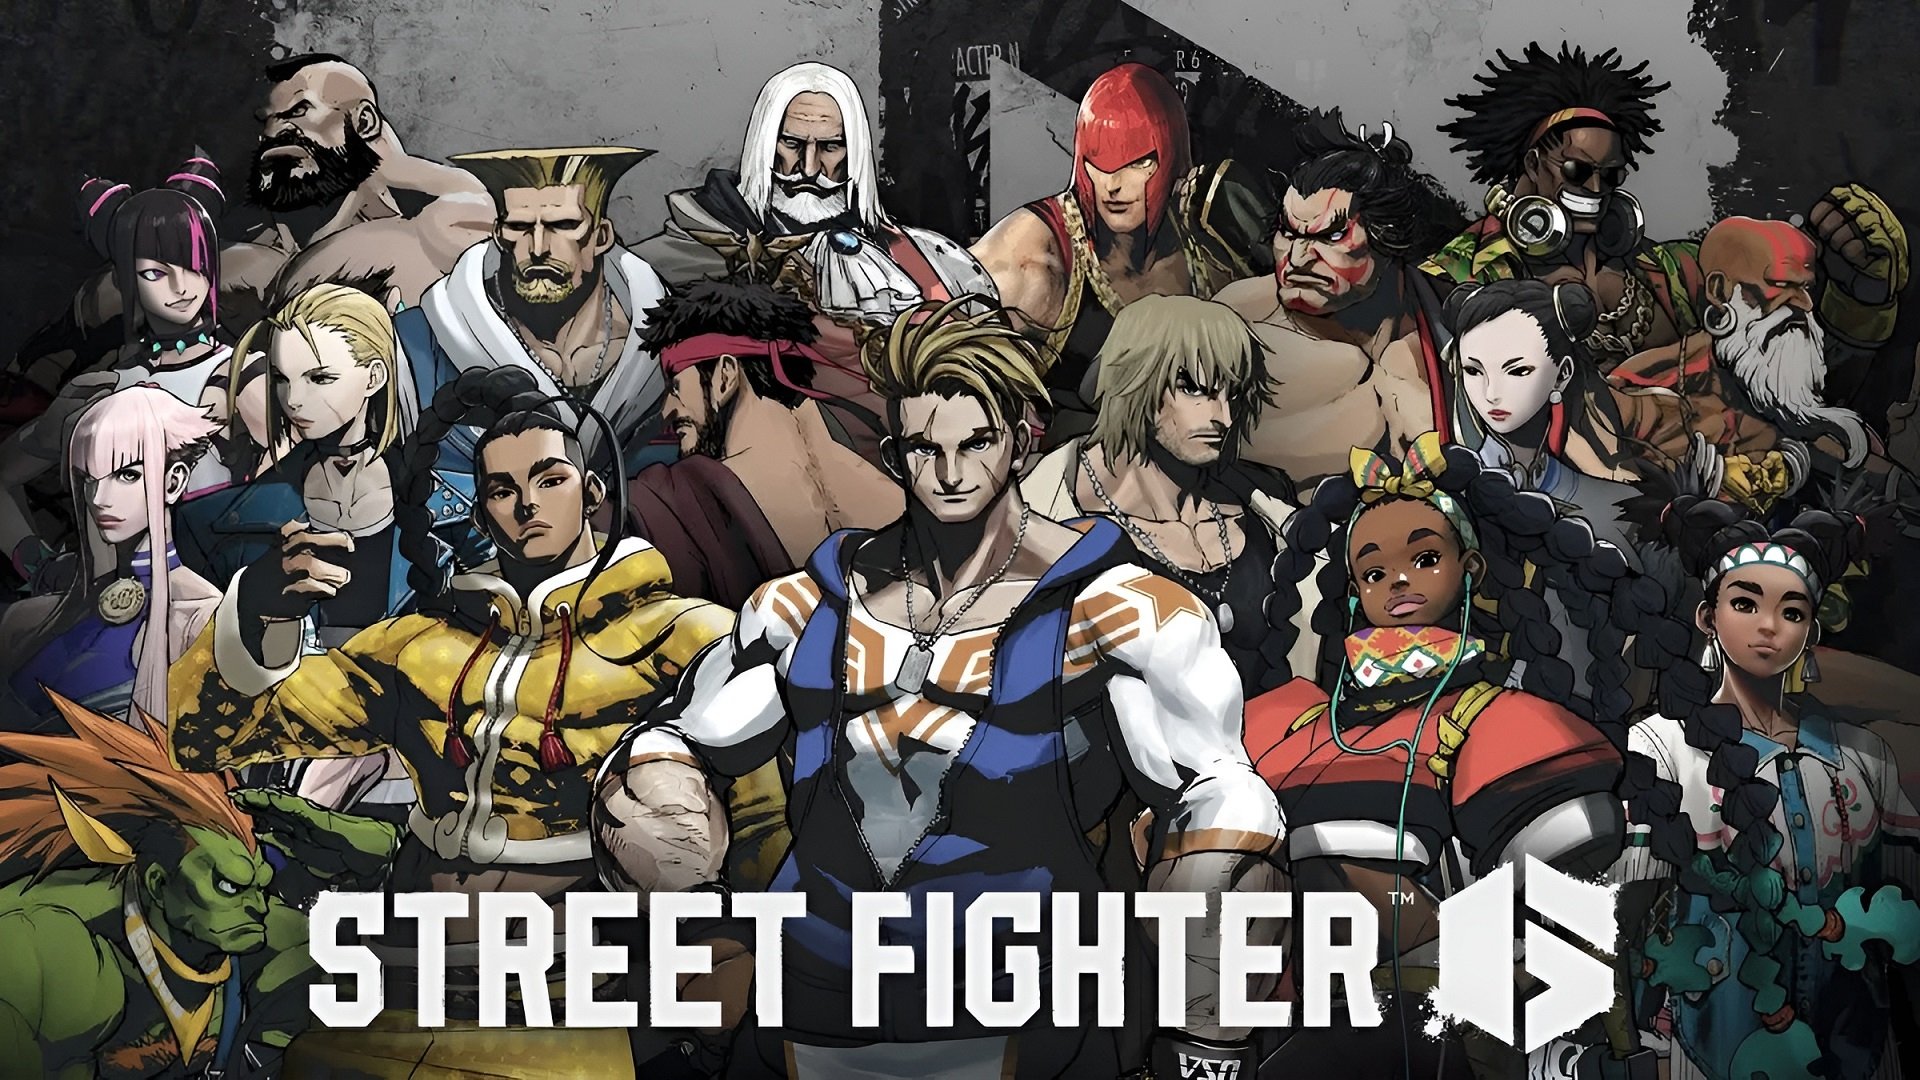 Street Fighter V: Season 1 Character Pass (DLC) DLC STEAM digital